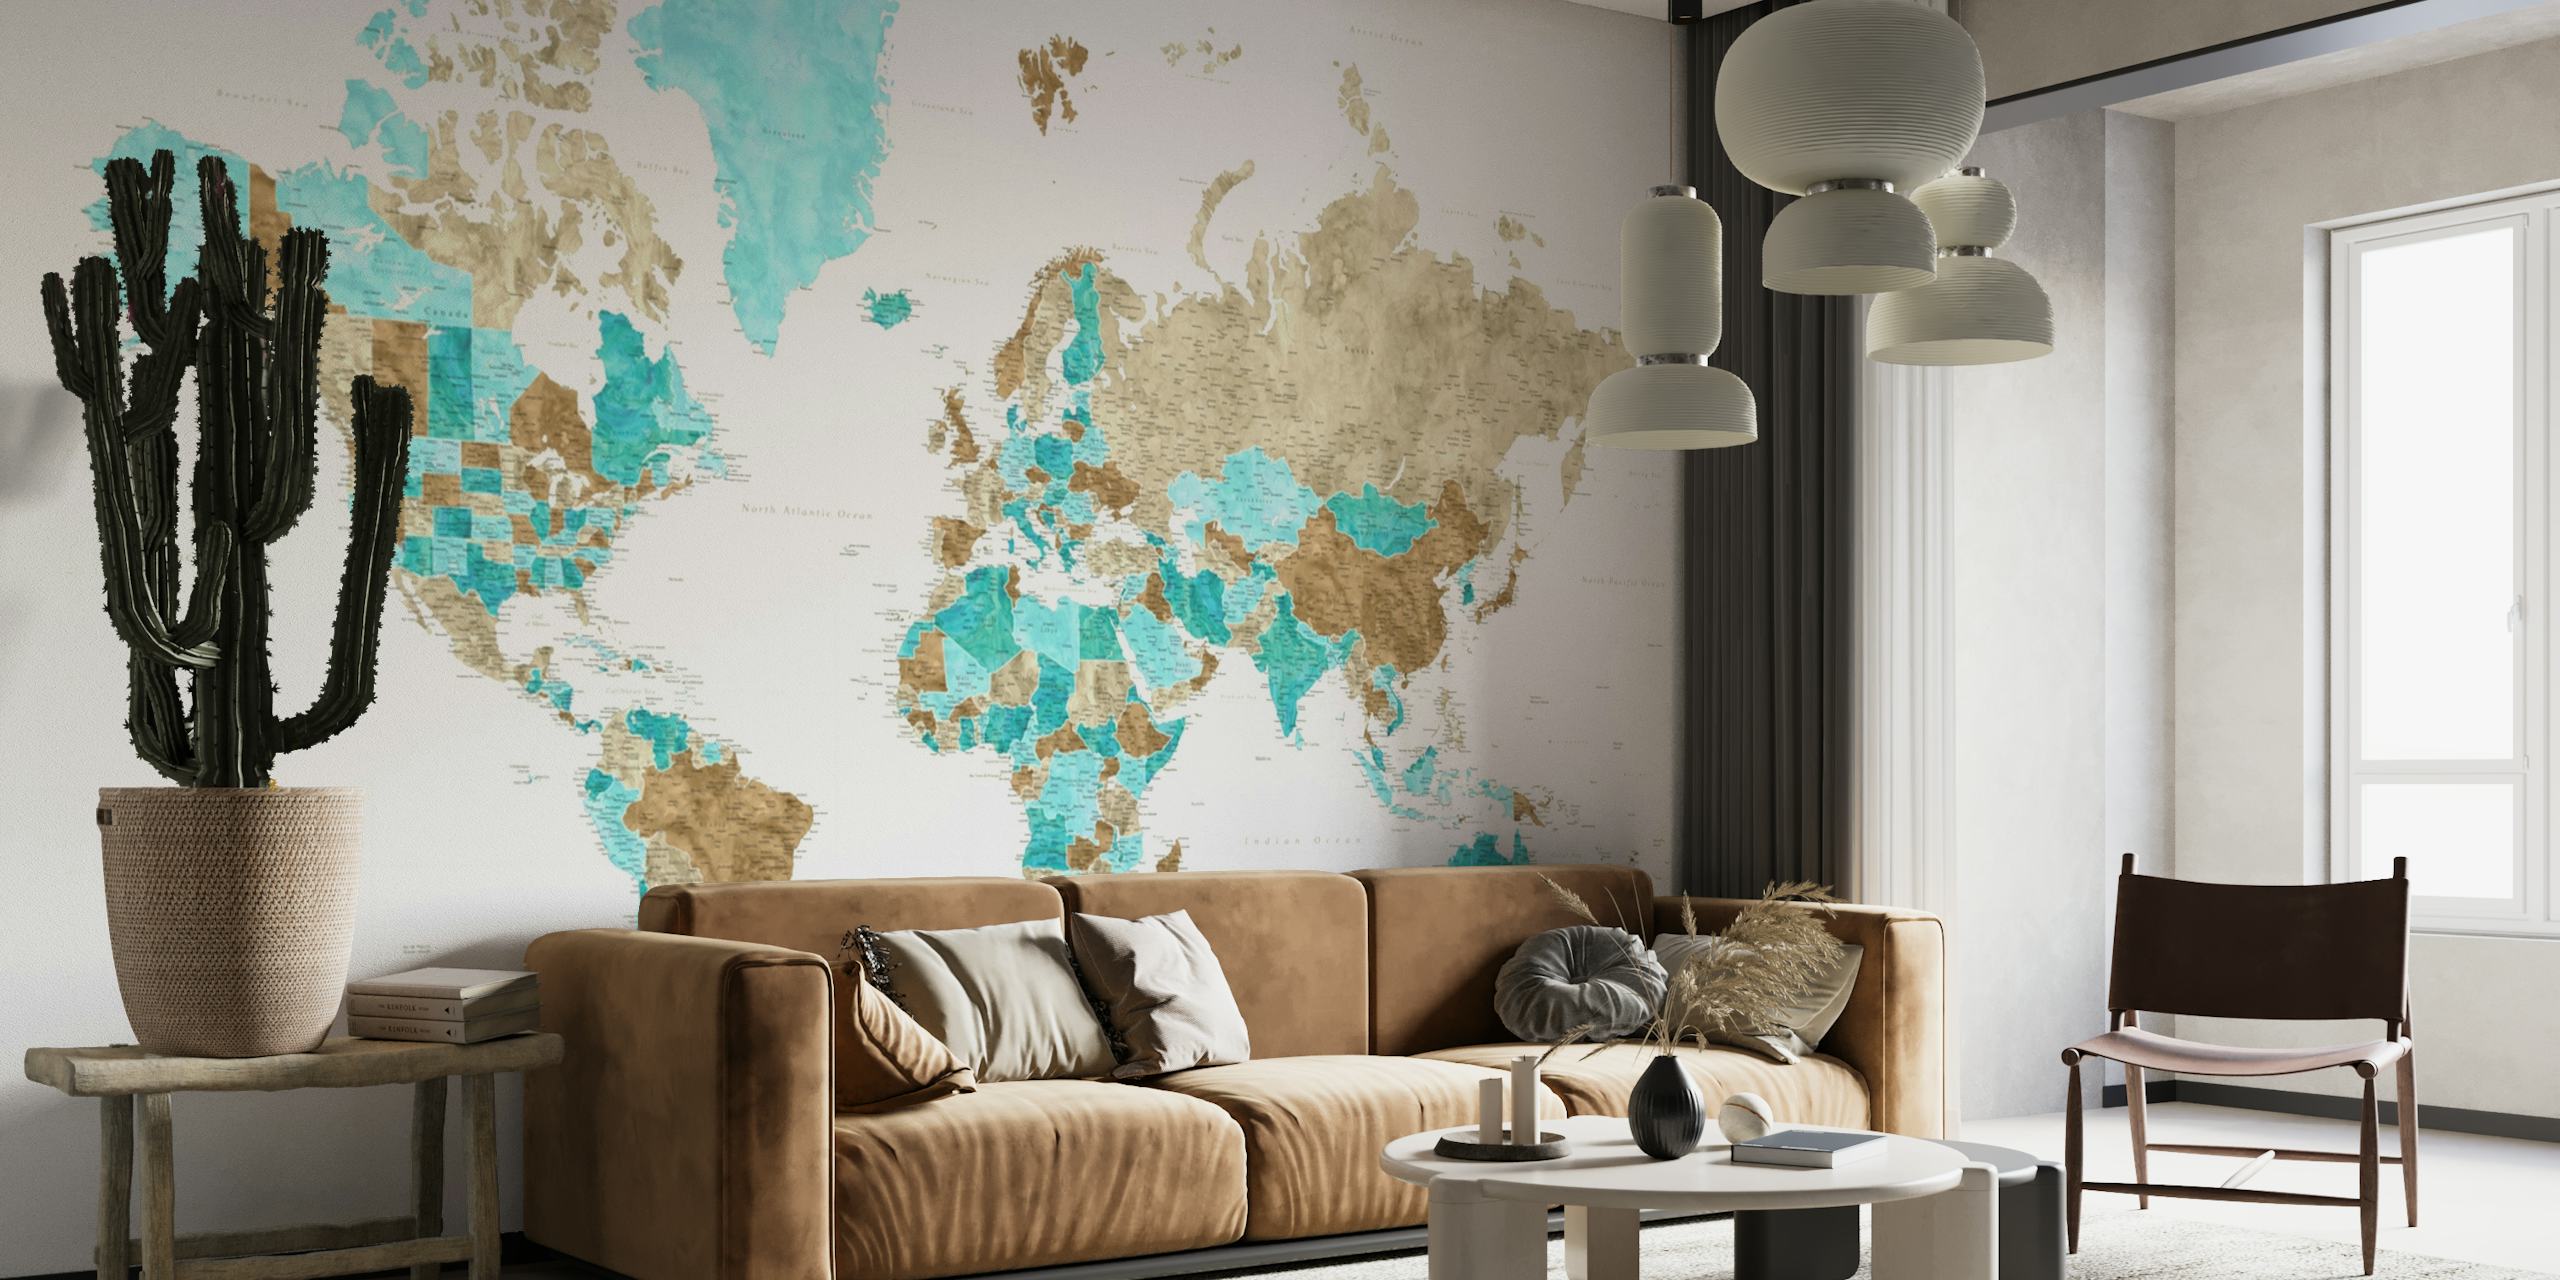 Gedetailleerde wereldkaart met aardetinten en turquoise accenten fotobehang